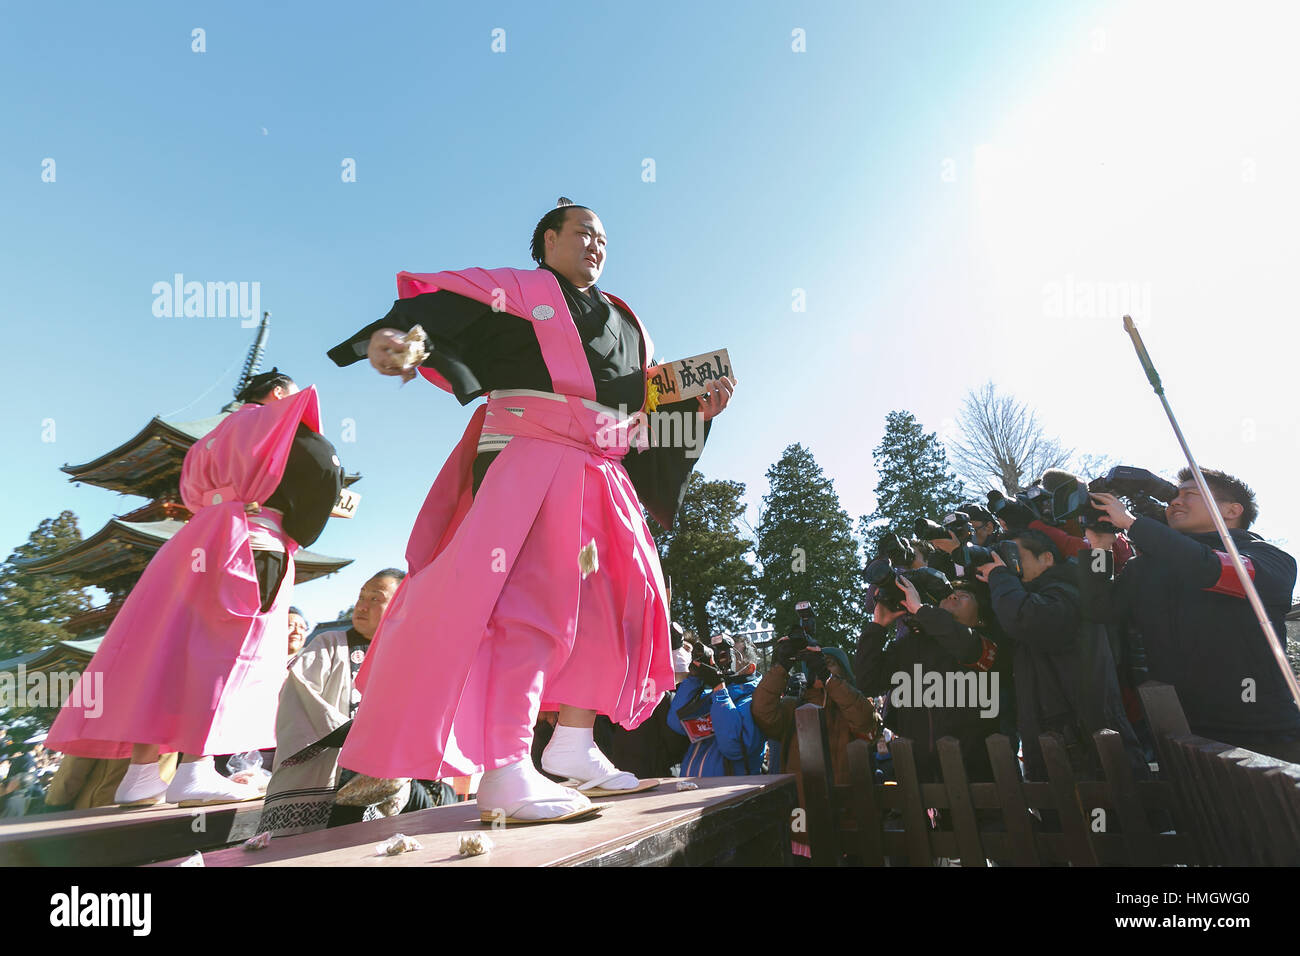 Chiba, Giappone. 3 febbraio 2017. Il lottatore di Sumo e new Grand Champion Yokozuna, Kisenosato, prende parte al festival Setsubun a Naritasan Shinshoji Temple il 3 febbraio 2017, a Chiba, Giappone. Setsubun è un festival annuale celebrata il 3 febbraio segna il giorno prima dell'inizio della primavera. Famiglie giapponesi gettano i semi di soia di uscire di casa per allontanare gli spiriti maligni e nella casa di invitare buona fortuna. Gli attori giapponesi e lottatori di sumo sono invitati a partecipare alla cerimonia per la consegna Naritasan Shinshoji Temple Credito: Aflo Co. Ltd./Alamy Live News Foto Stock